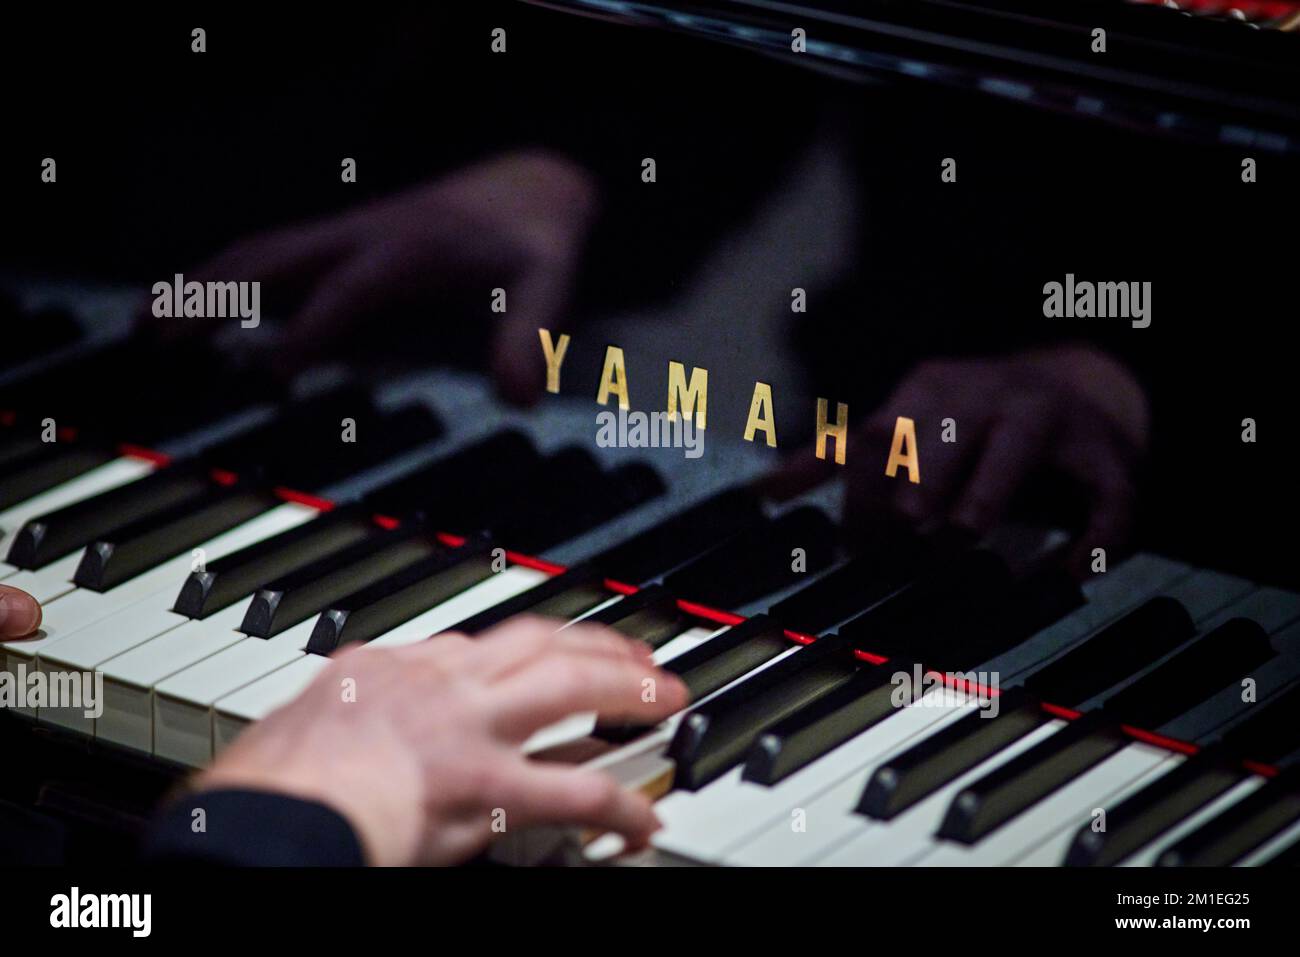 Yamaha Piano pianiste qui pille les clés de la musique Banque D'Images